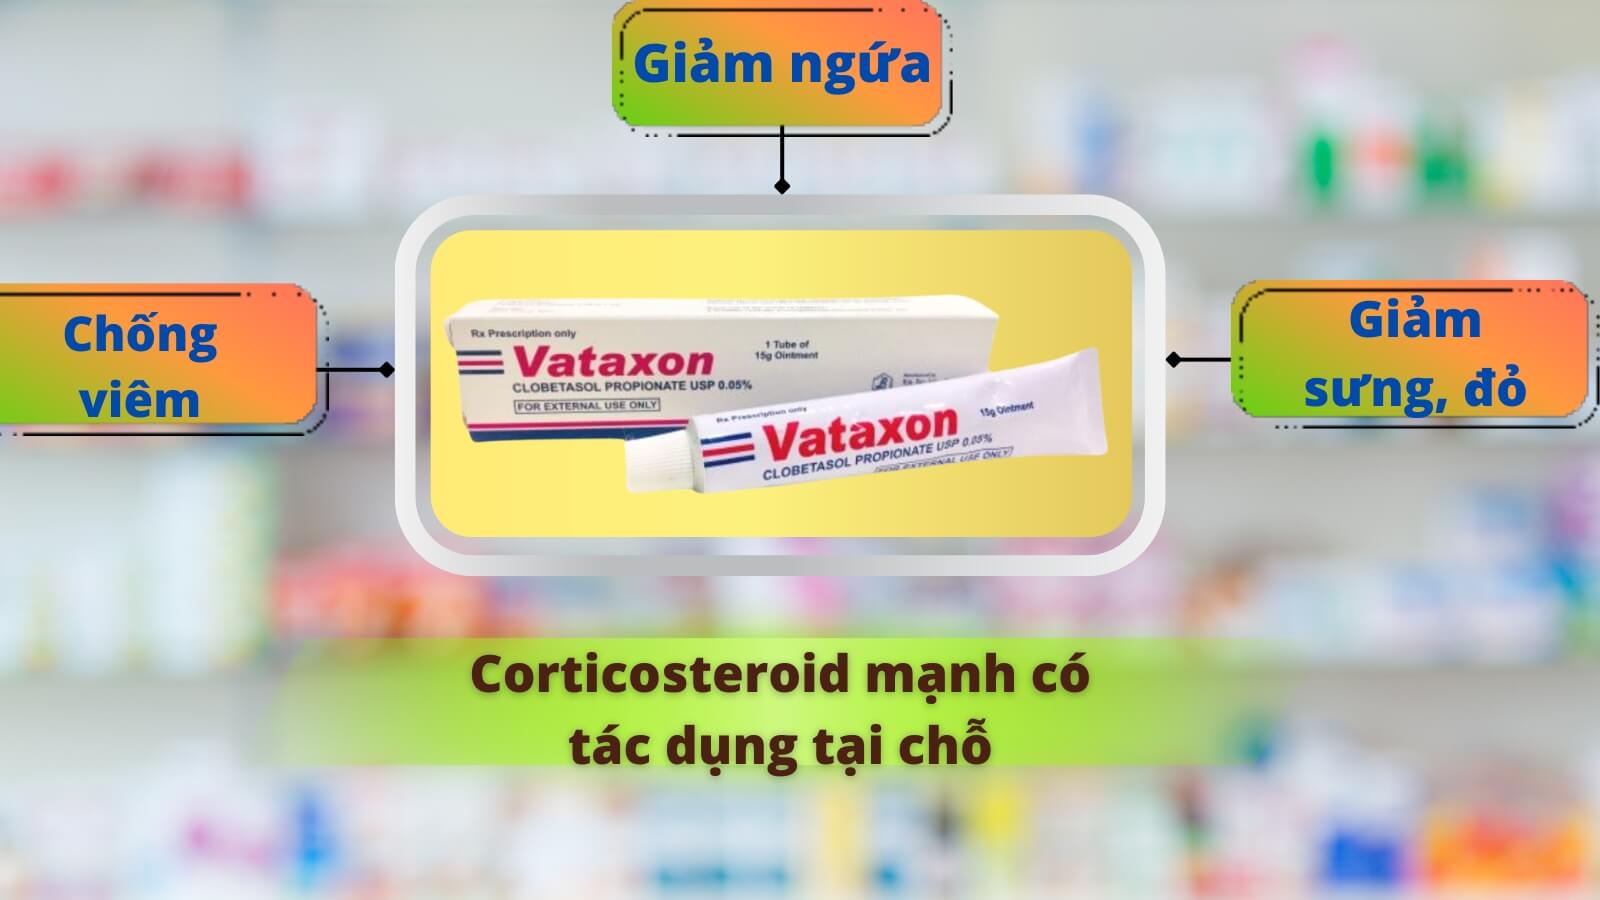 Thuốc Vataxon chứa Clobetasol propionate điều trị tại chỗ các bệnh viêm ngứa ngoài da